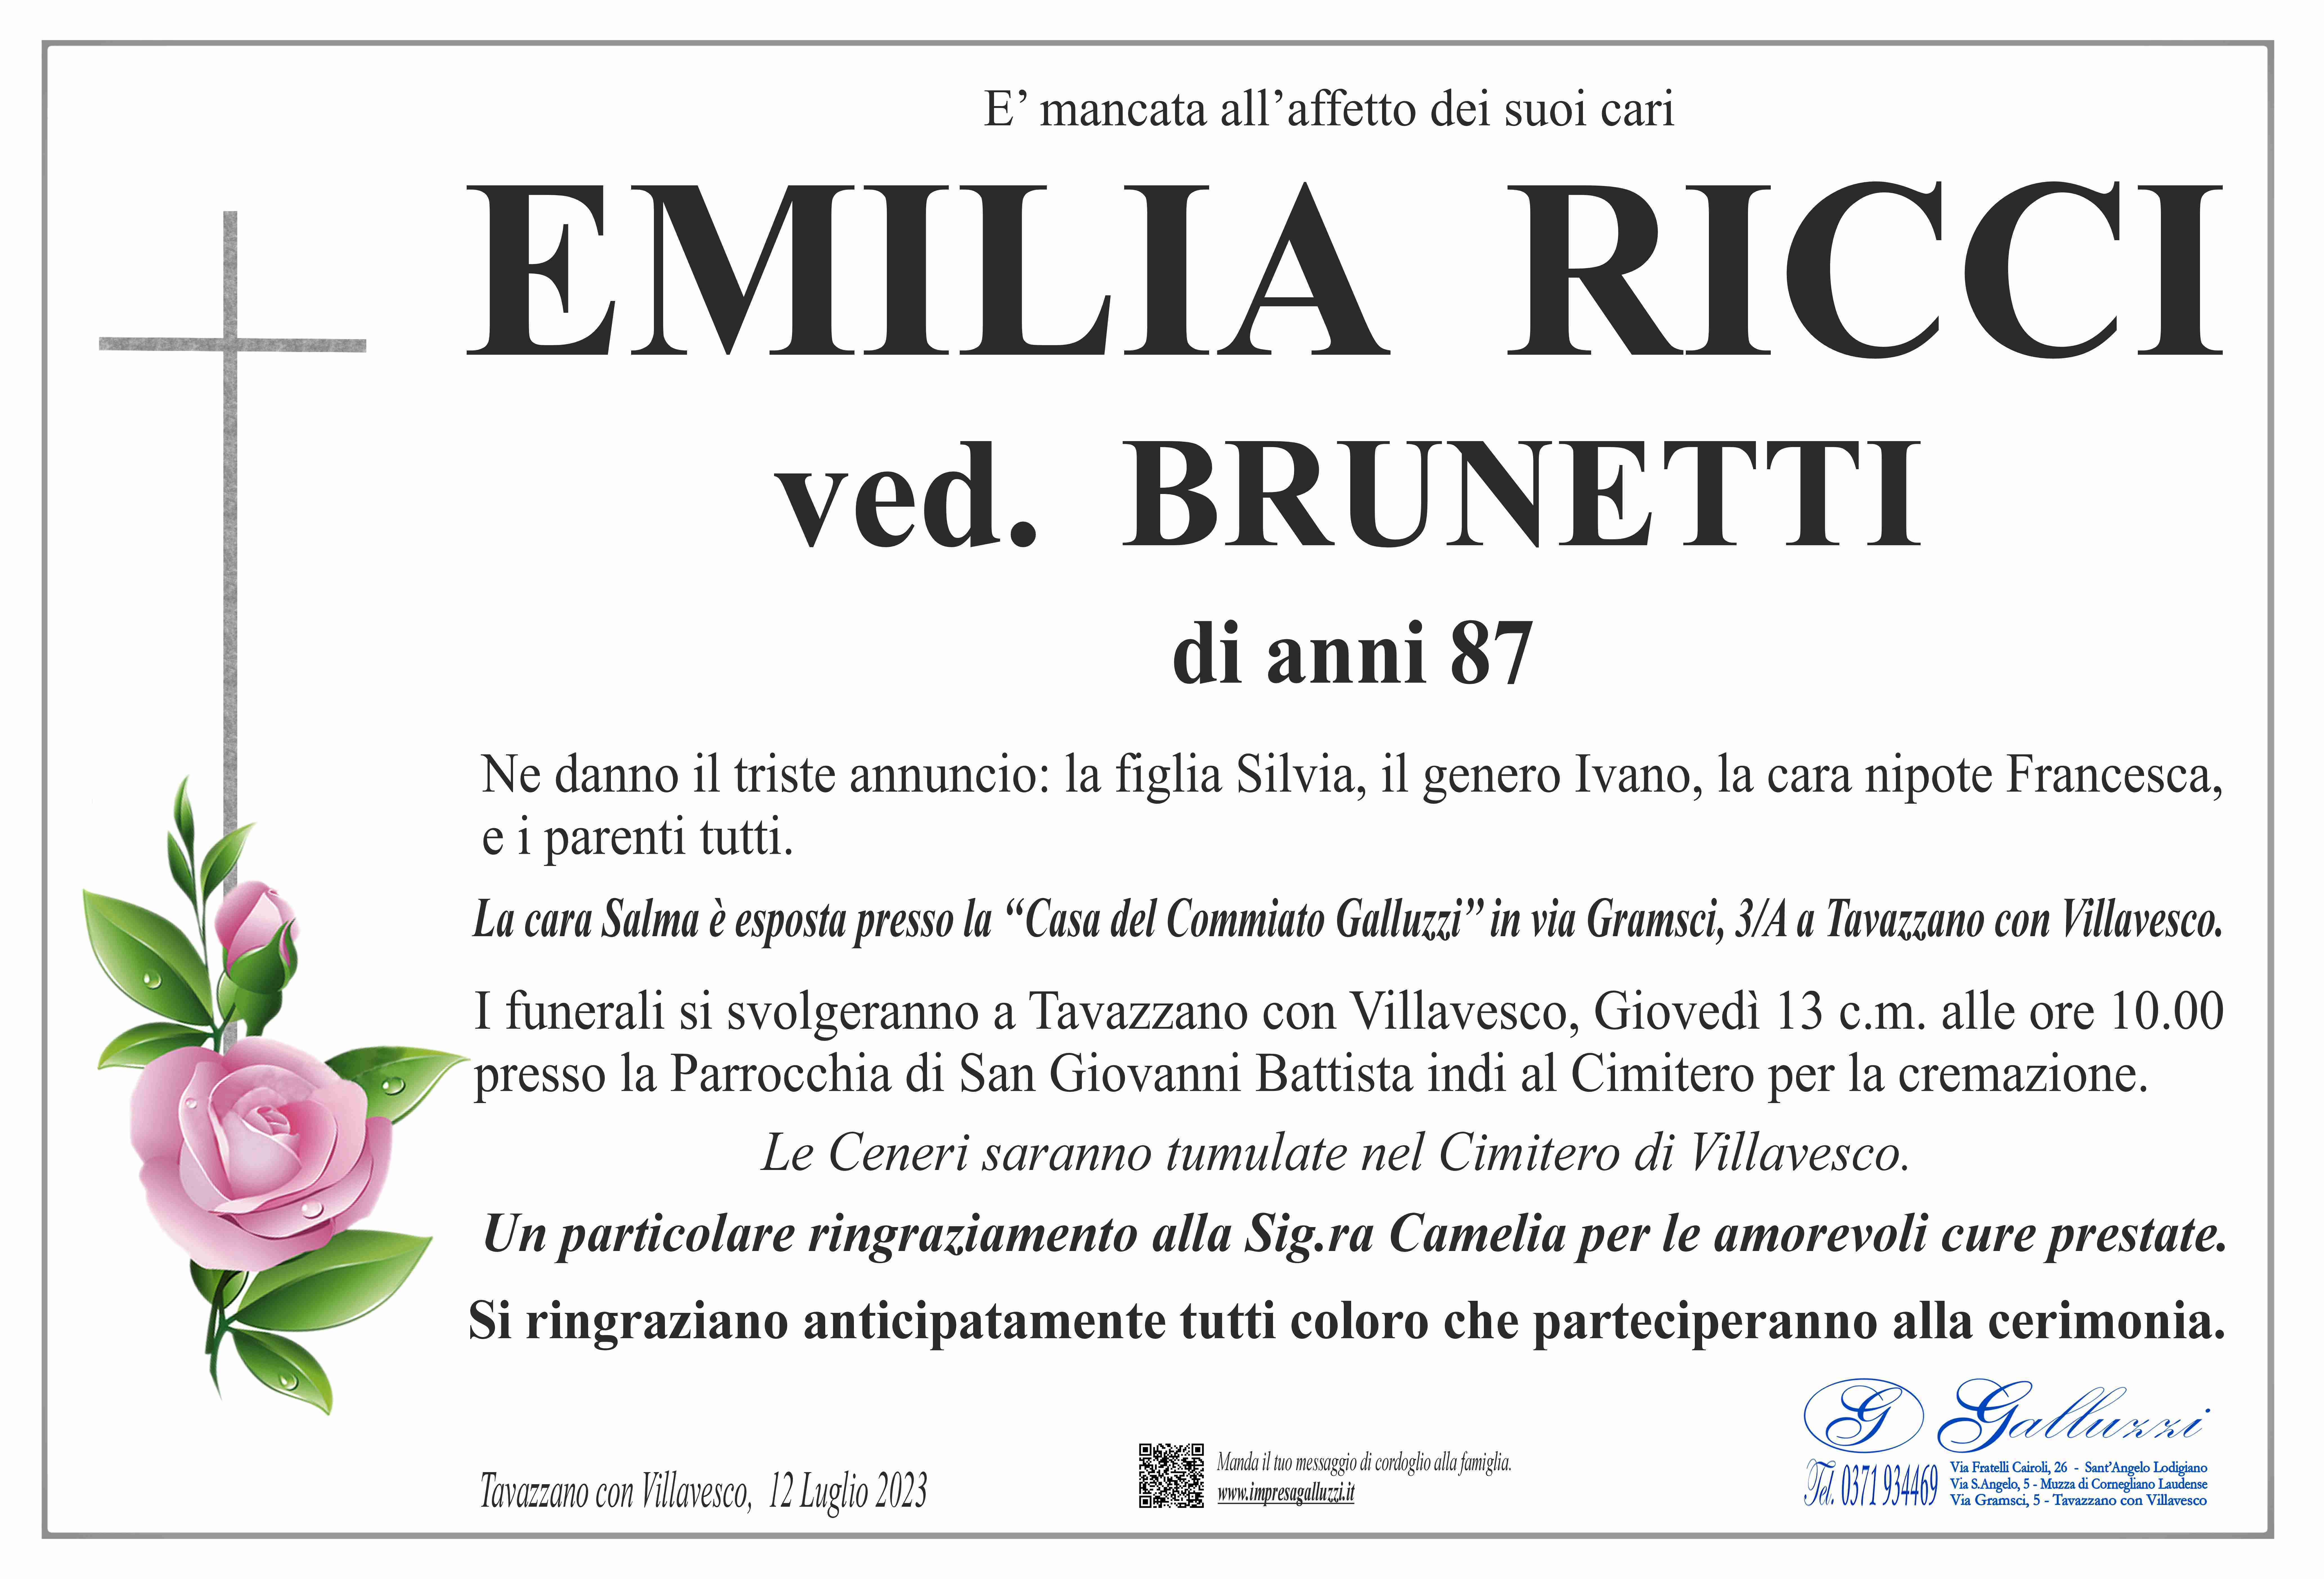 Emilia Ricci